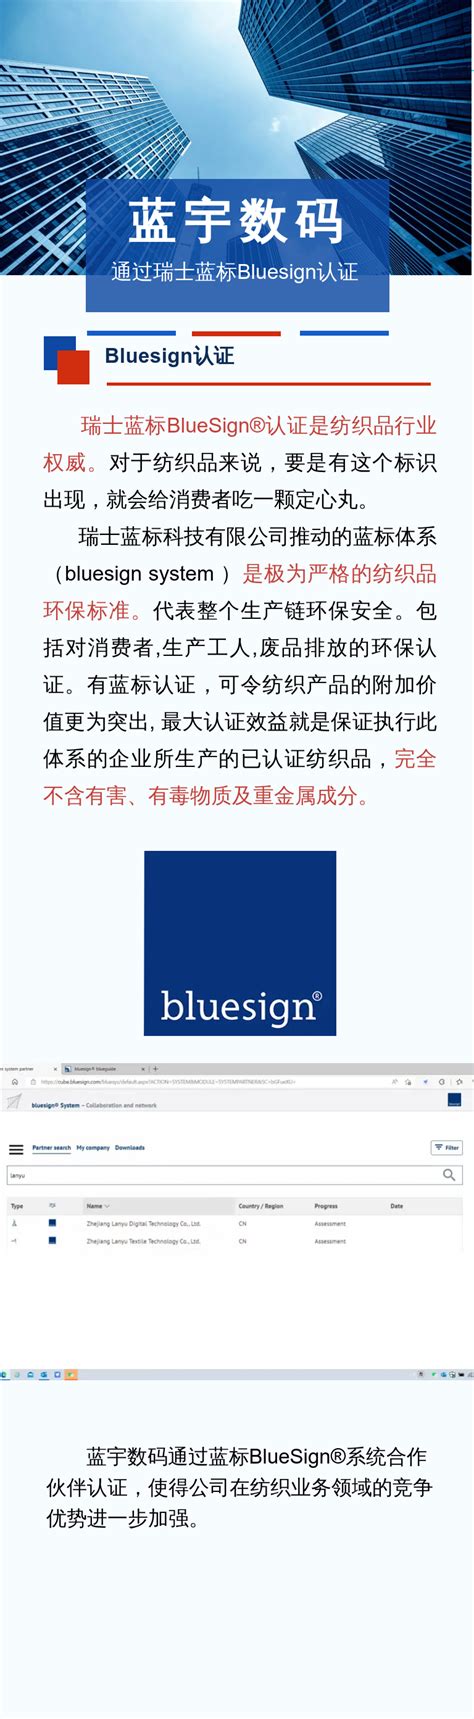 祝贺 蓝宇数码荣获瑞士蓝标Bluesign认证-浙江蓝宇数码科技股份有限公司